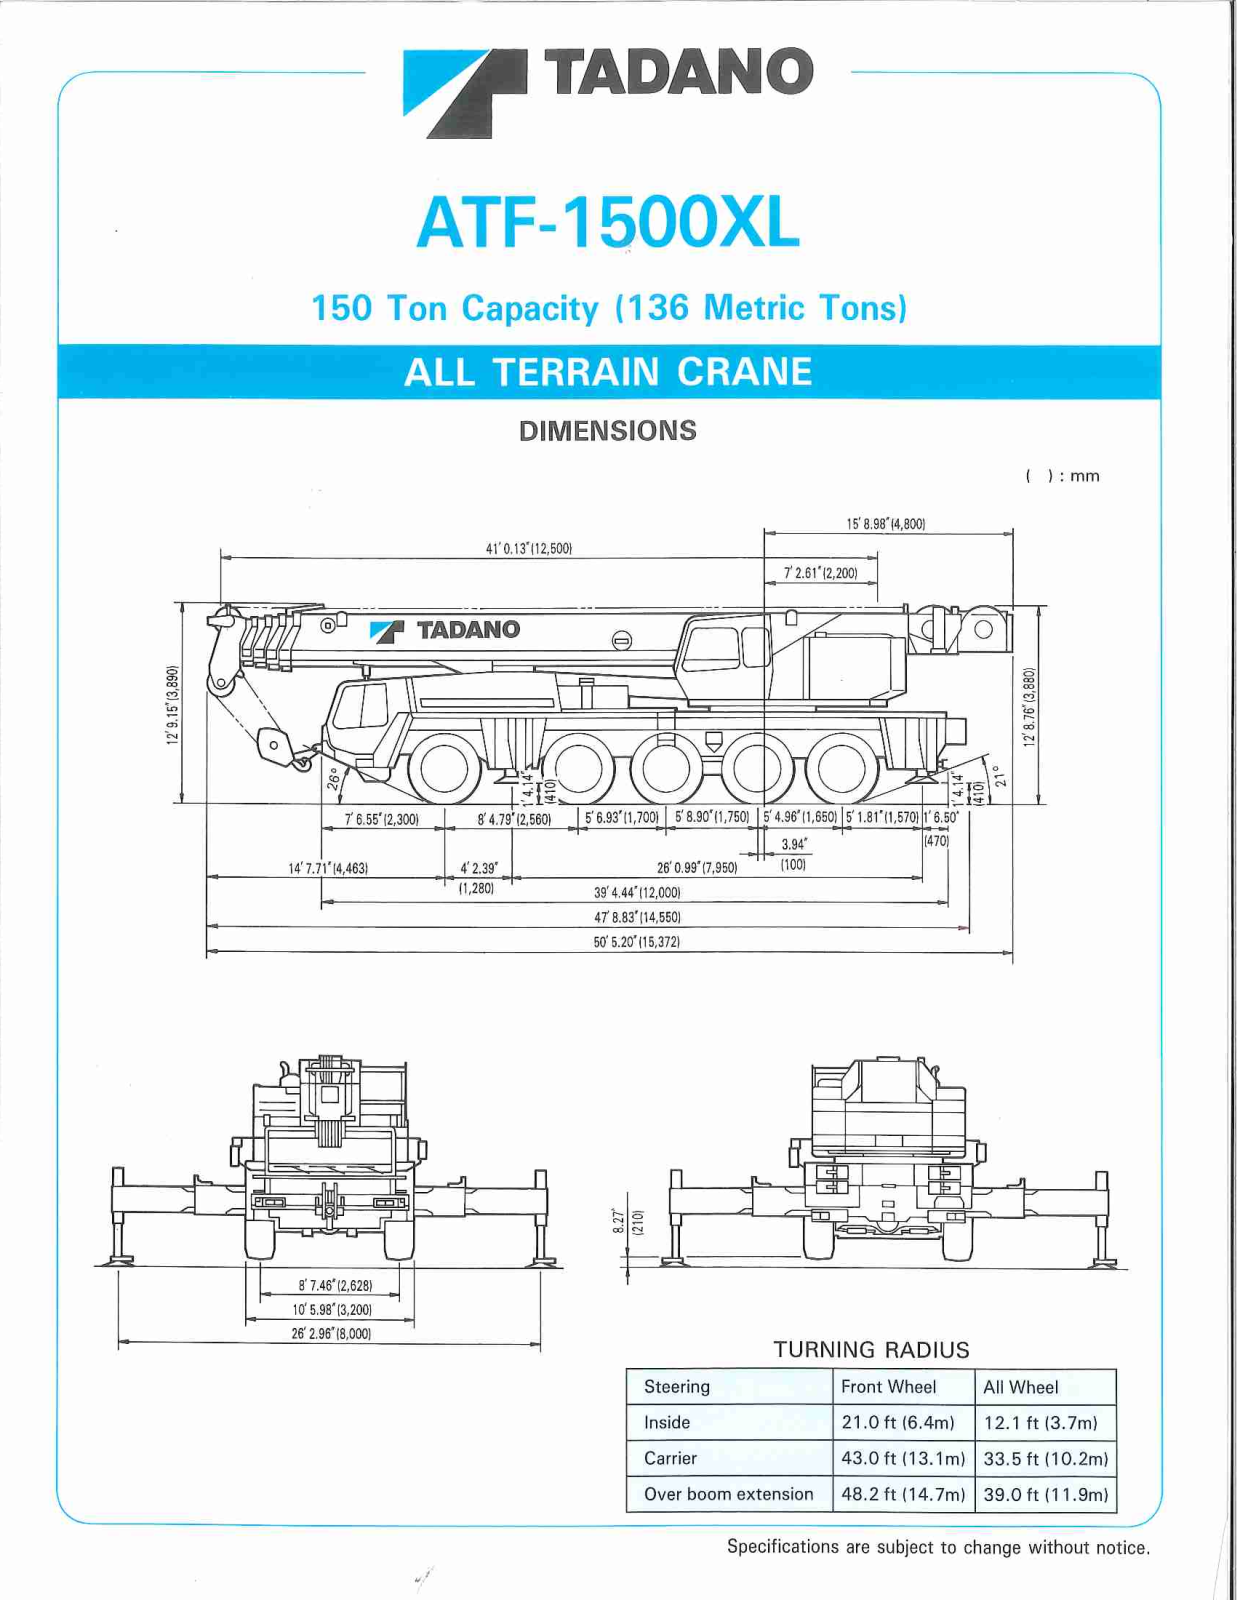 Tadano ATF-1500XL Service Manual